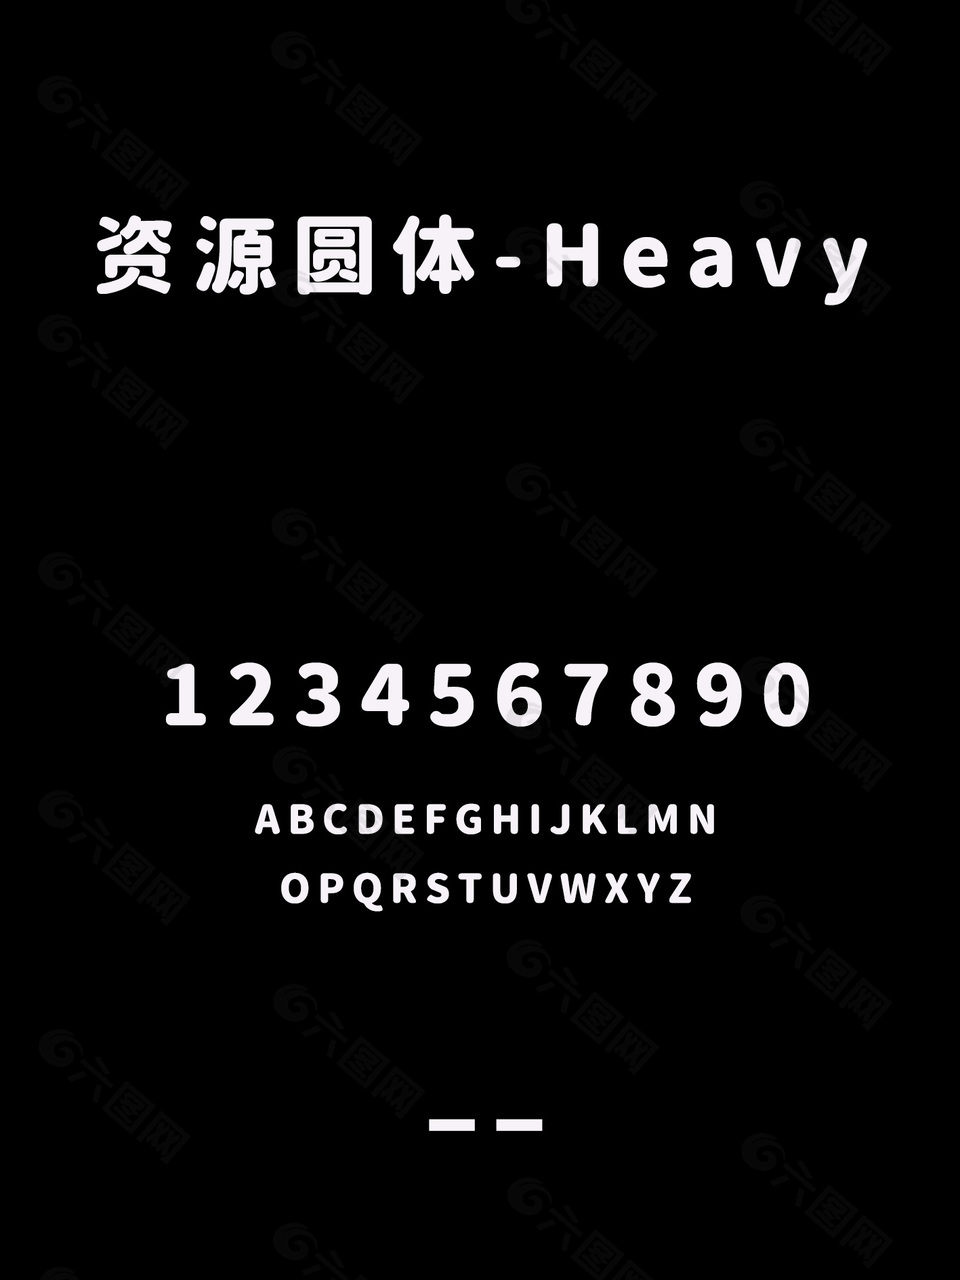 资源圆体-Heavy字体包安装